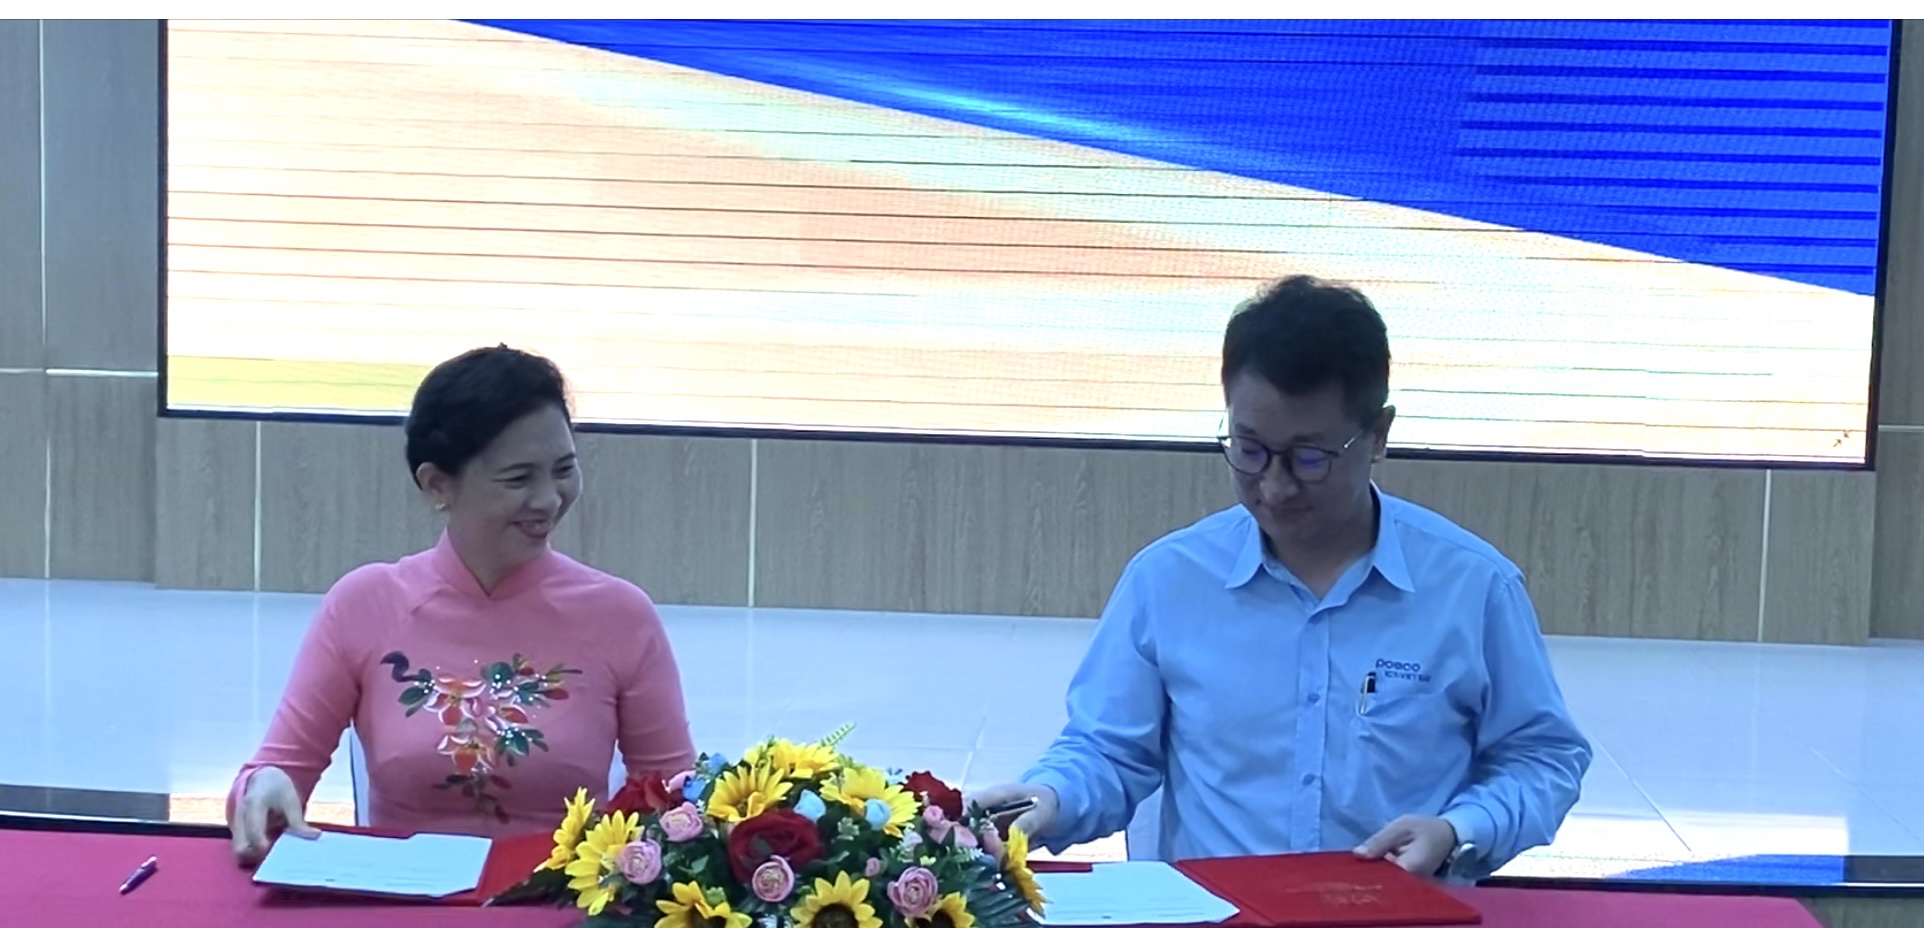 PGS.TS. Nguyễn Thị Hoài Phương, Q.Hiệu trưởng BVU ký kết thỏa thuận hợp tác với ông Jeung Jae Hee, Giám đốc công ty POSCO ICT Việt Nam.